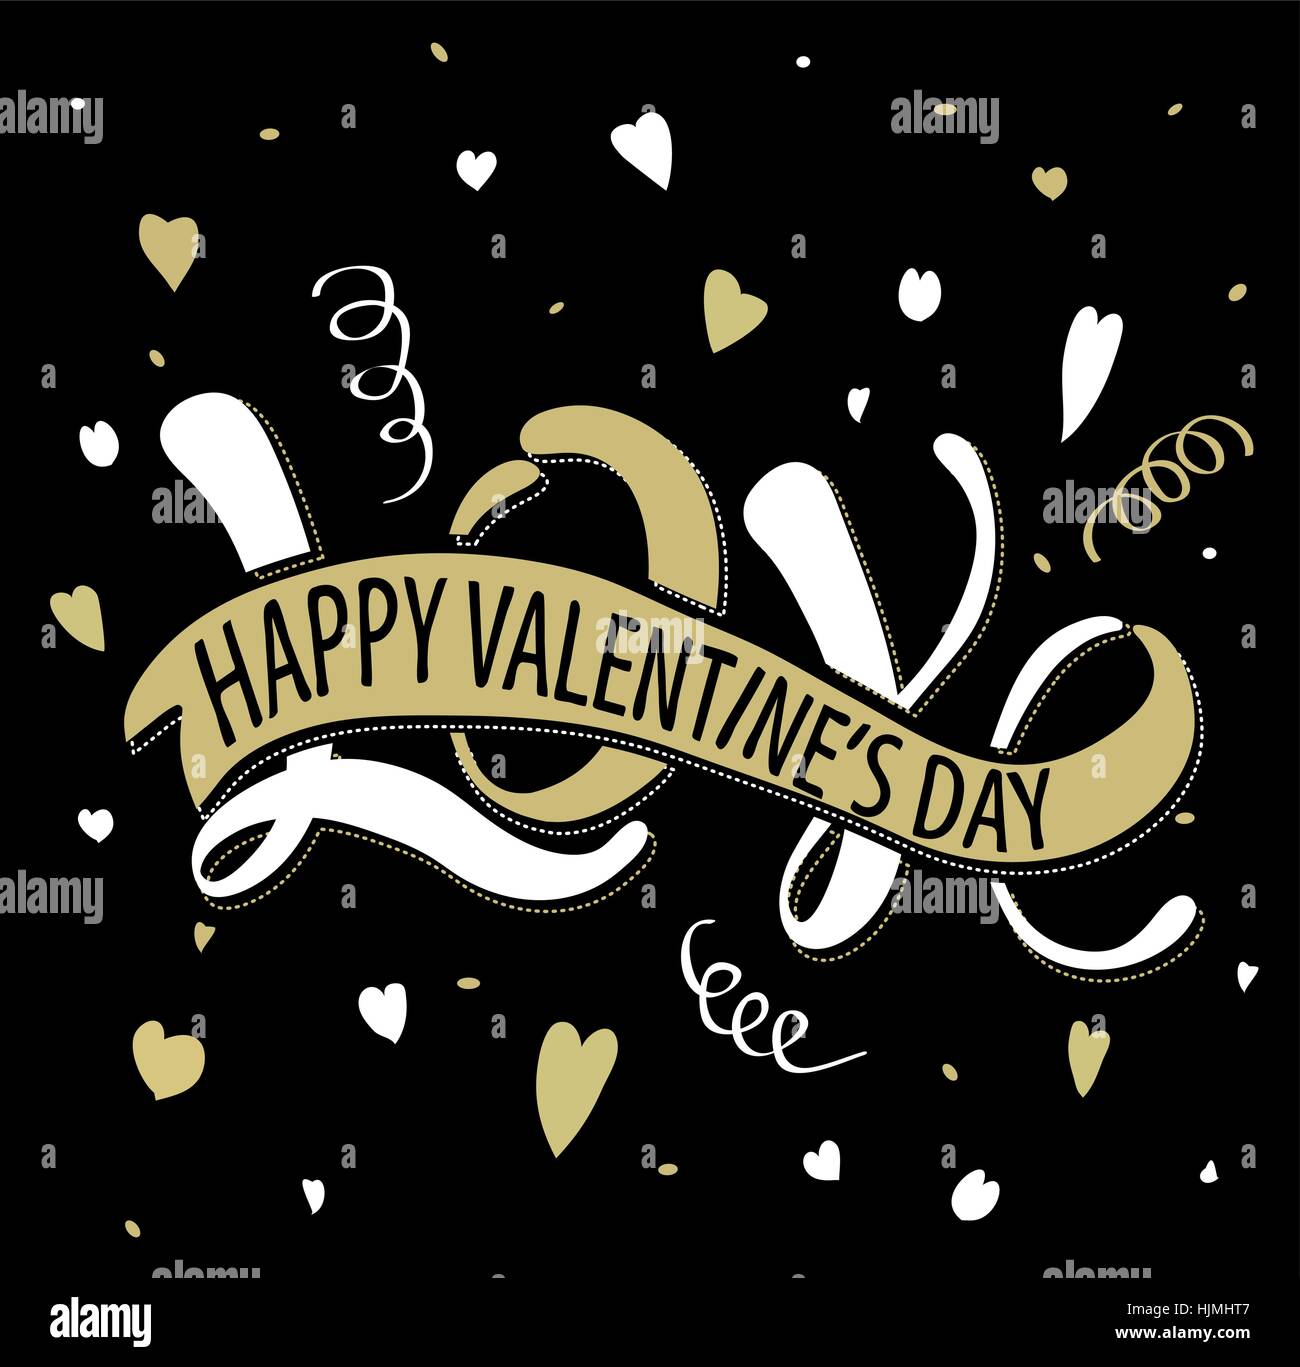 Vektor-Illustration der Liebe - Valentinstag, romantisches handschriftliche Inschrift für Poster, Valentinstag-Karte Stock Vektor